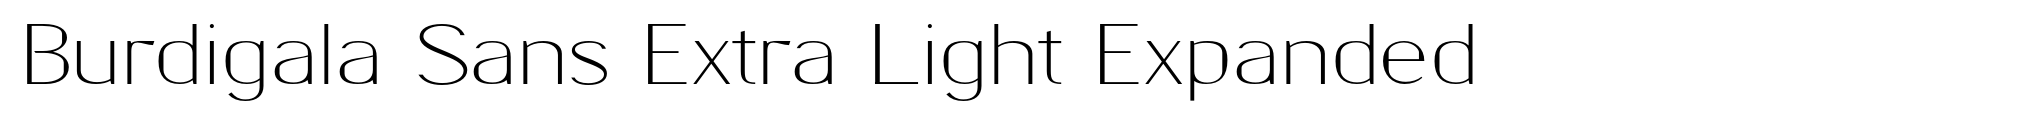 Burdigala Sans Extra Light Expanded image